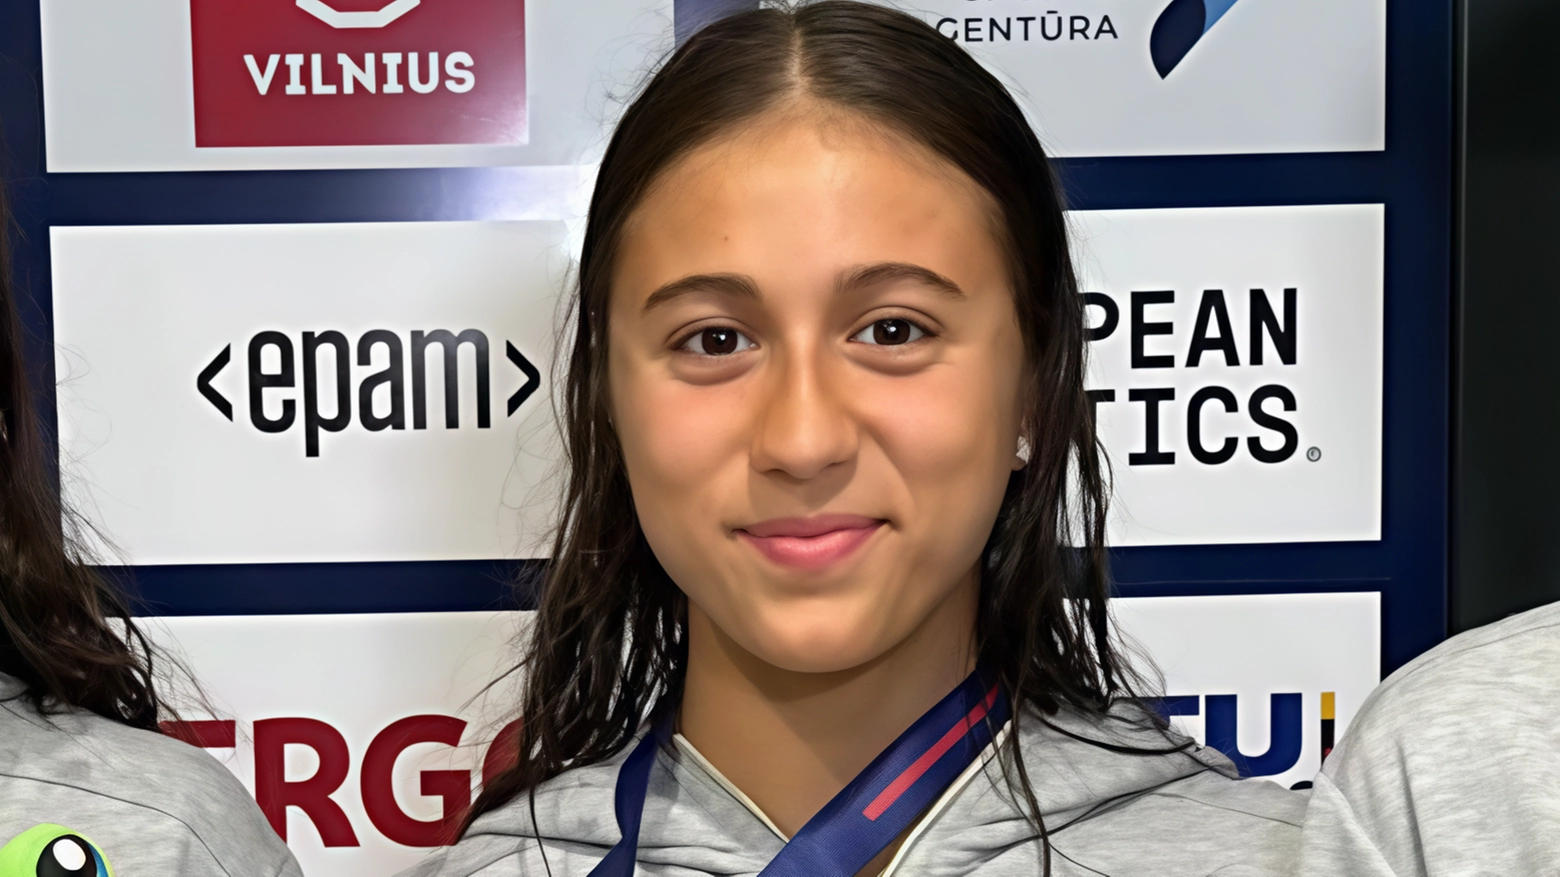 La nuotatrice Lucrezia Domina ha brillato agli Europei juniores conquistando un argento individuale nei 400 stile, confermando il talento italiano nel nuoto giovanile. A soli sedici anni, le aspettative per il suo futuro sono alte.